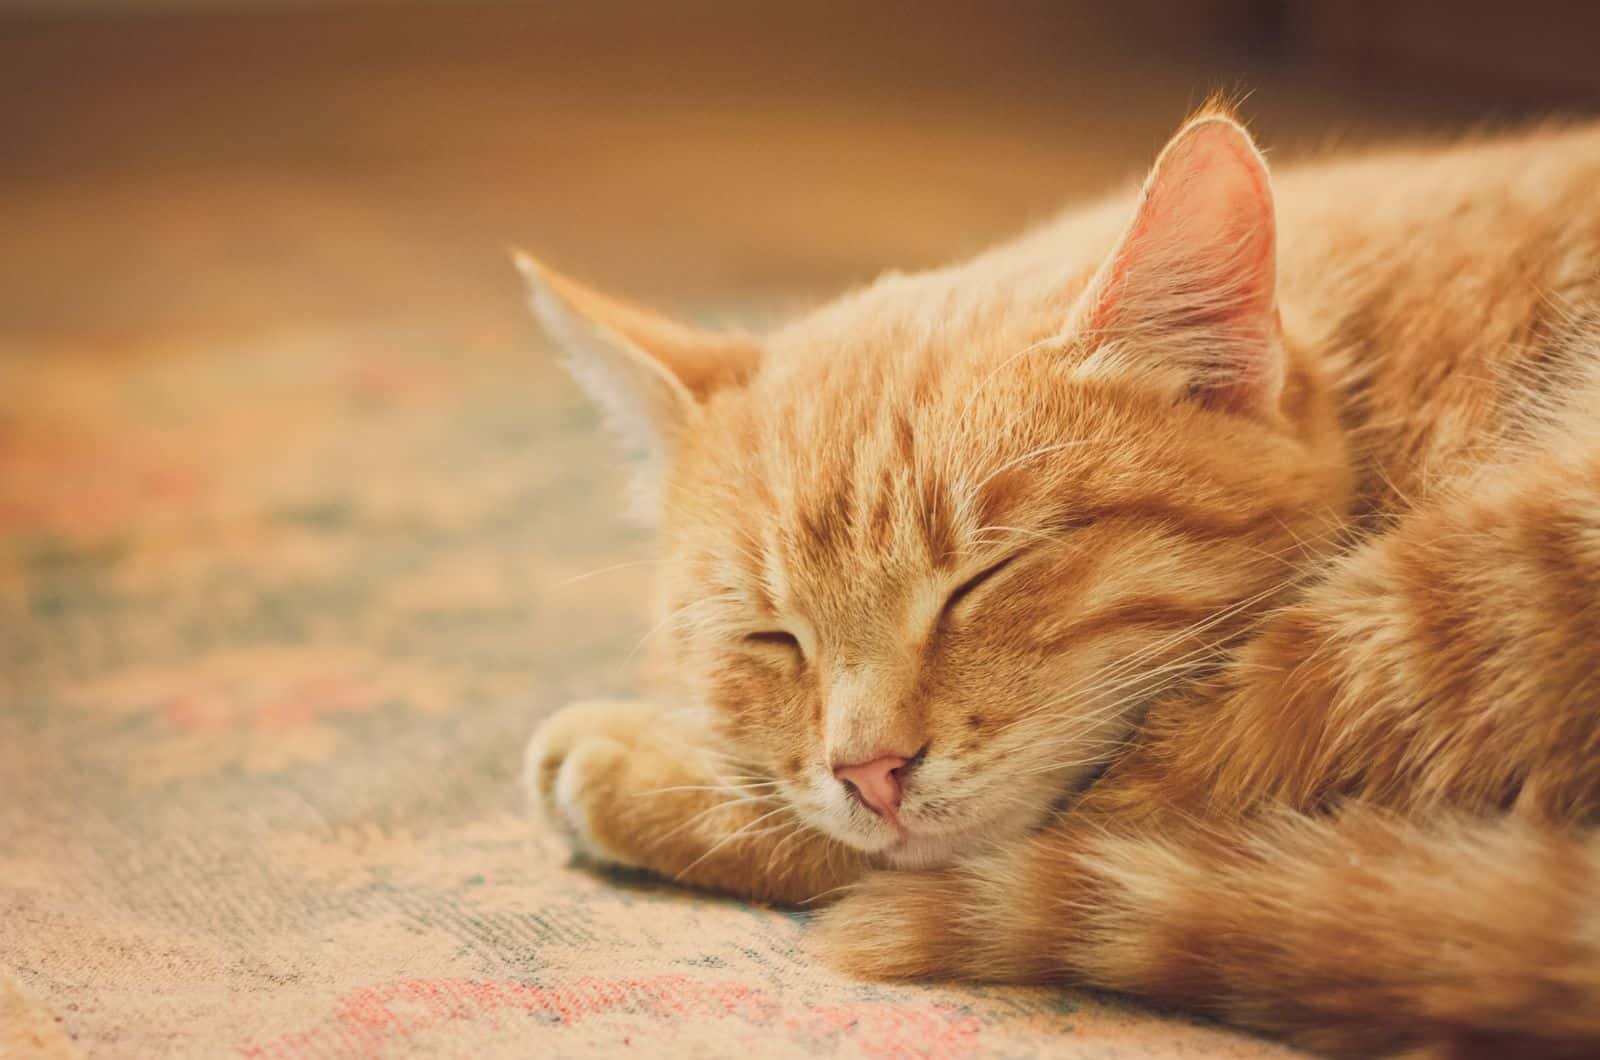 cute Tabby Cat sleeping